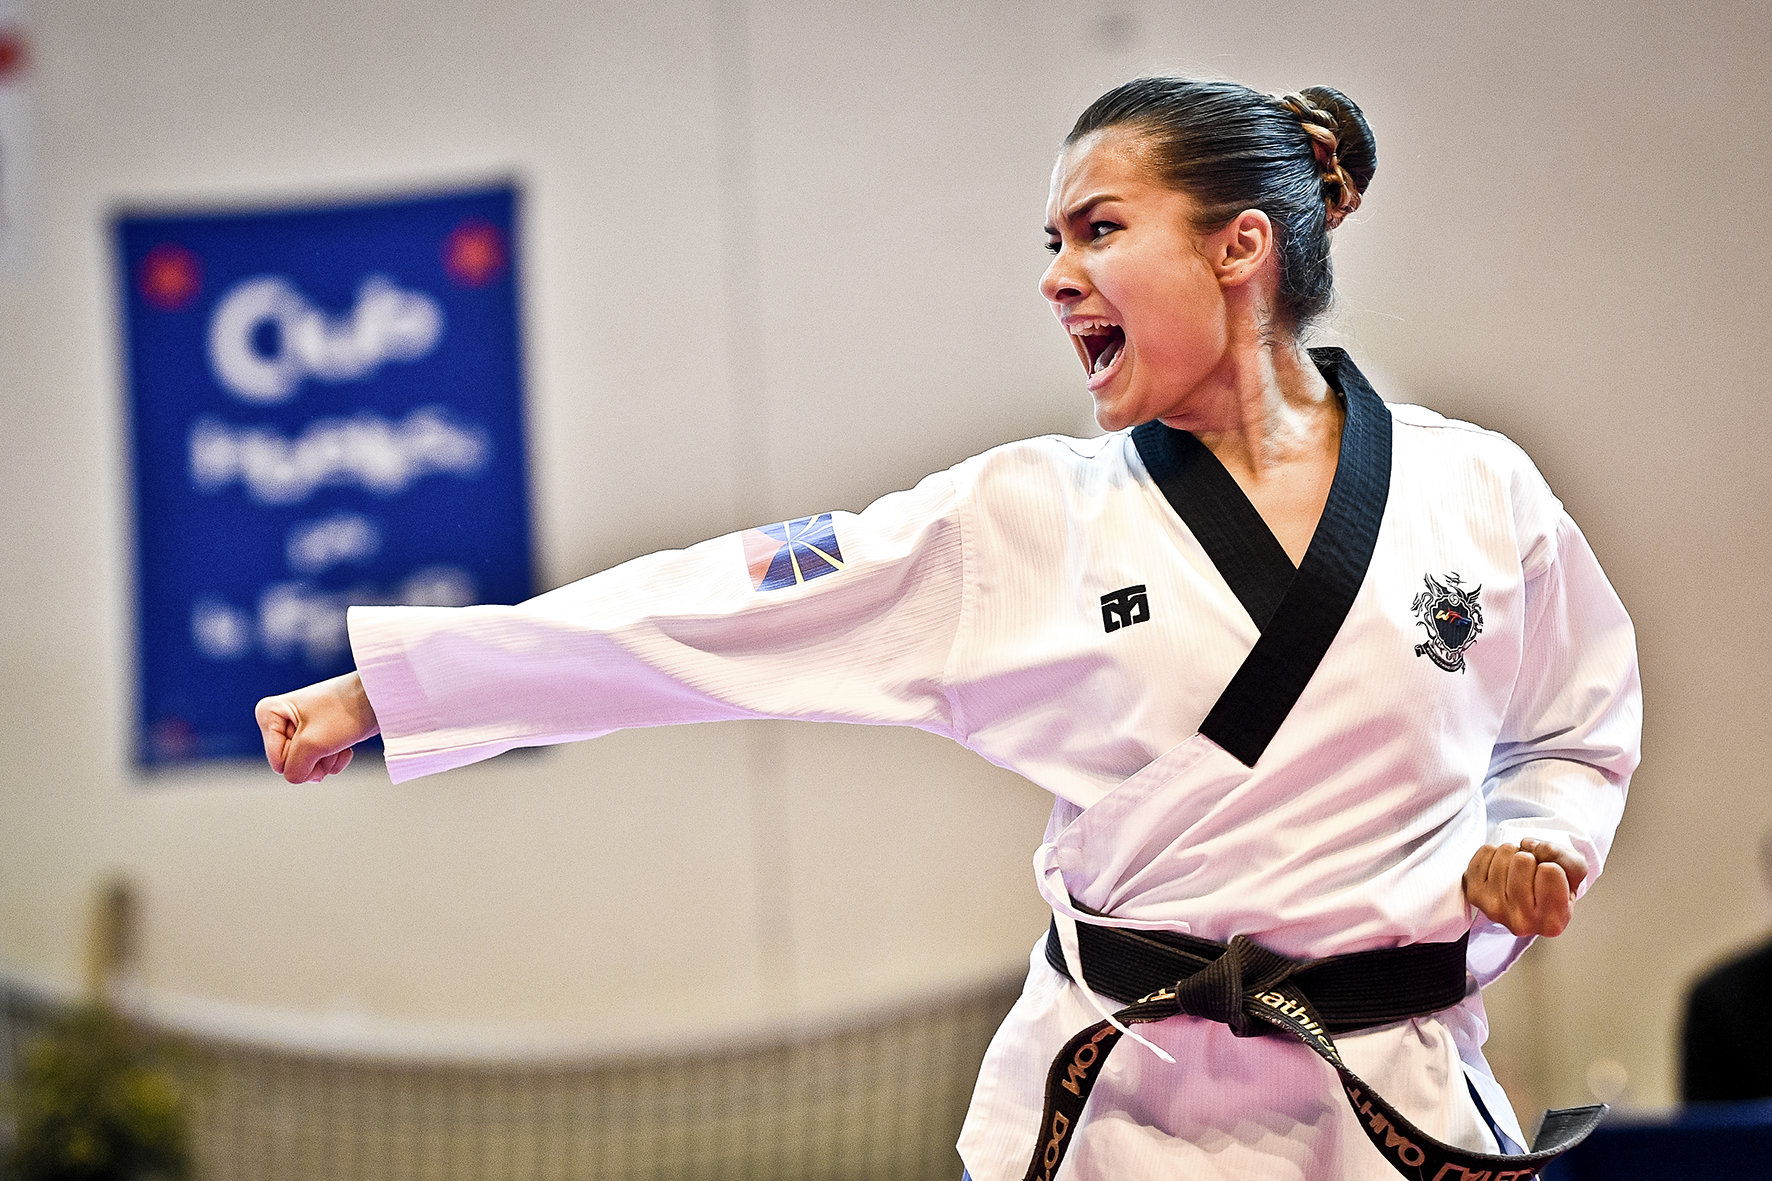 20 ans de pratique, Ceinture Noire 2ème Dan, Championne de France de Taekwondo en 2016, 2017 et 2018, Mathilde Thiao-Layel a déjà fait un bon bout de chemin...